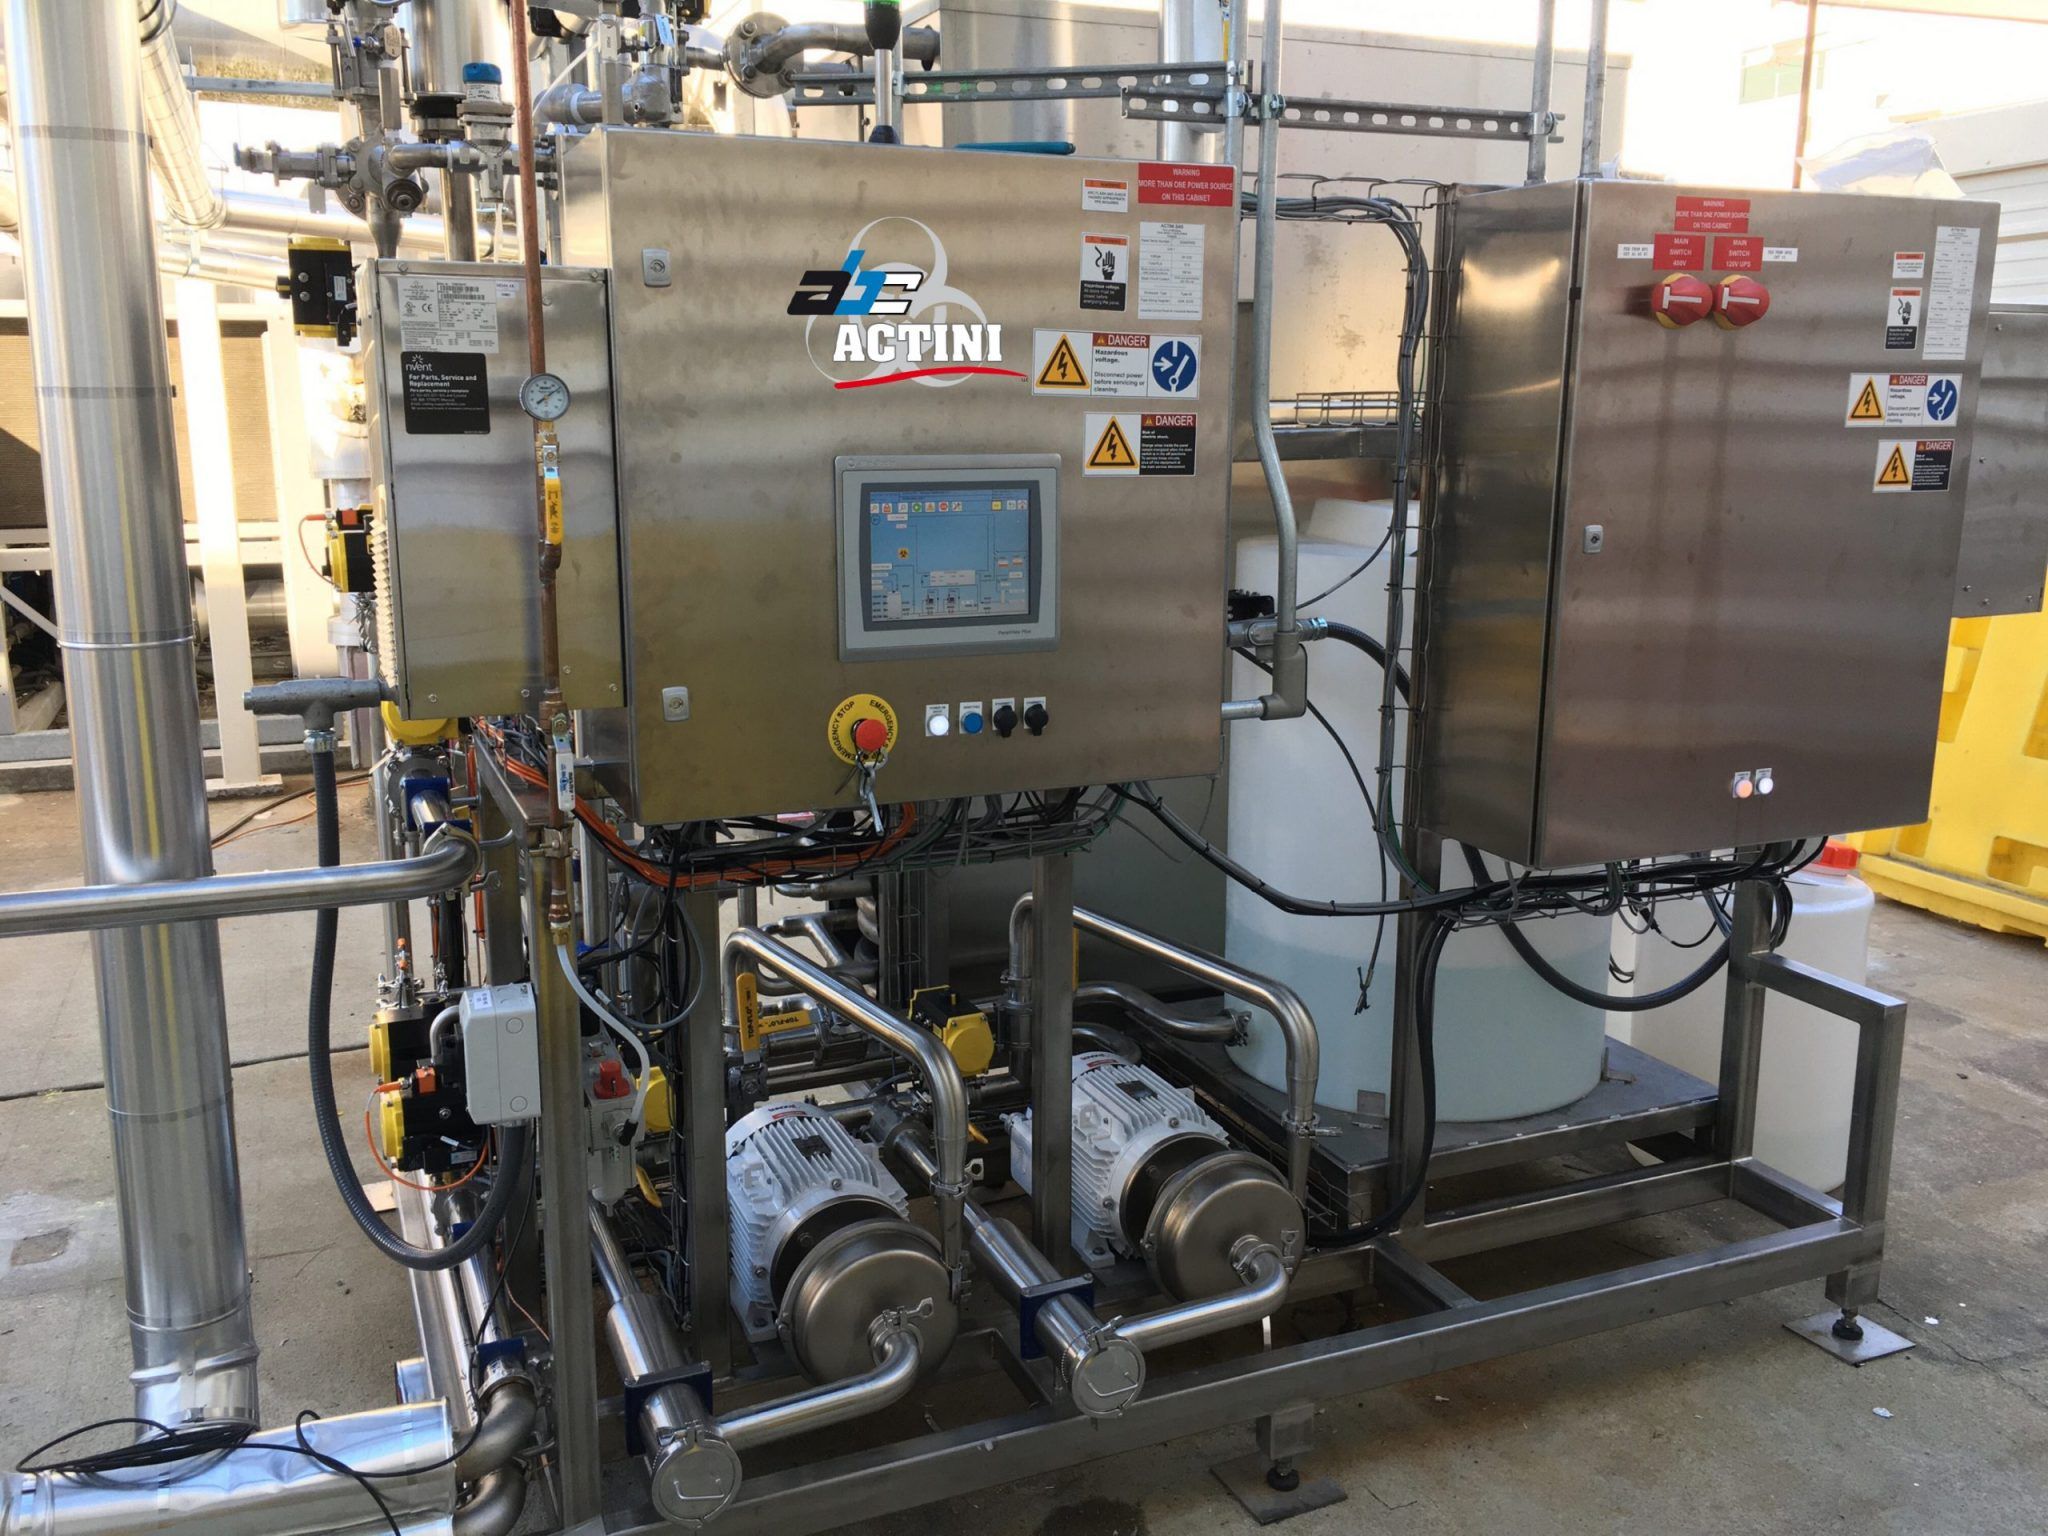 ULT+ - 3,000 lph - biowaste decontamination system - ABC Actini